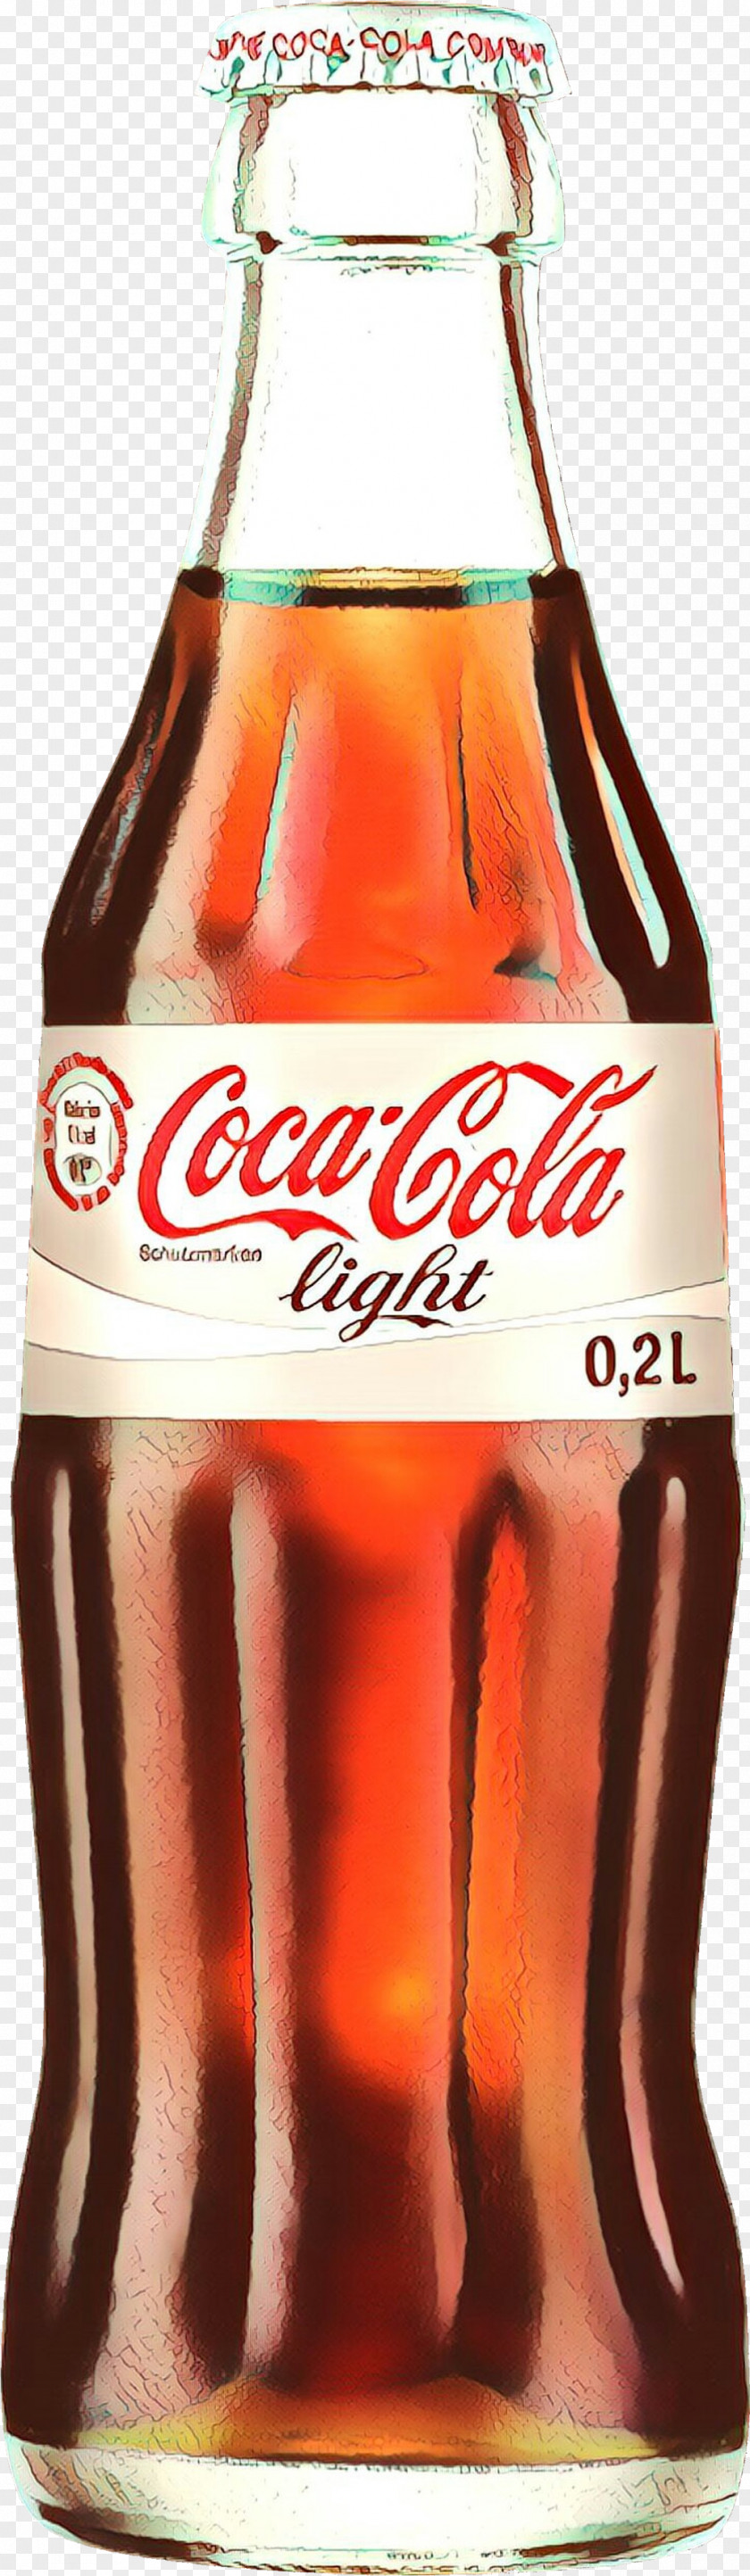 Coca-cola PNG